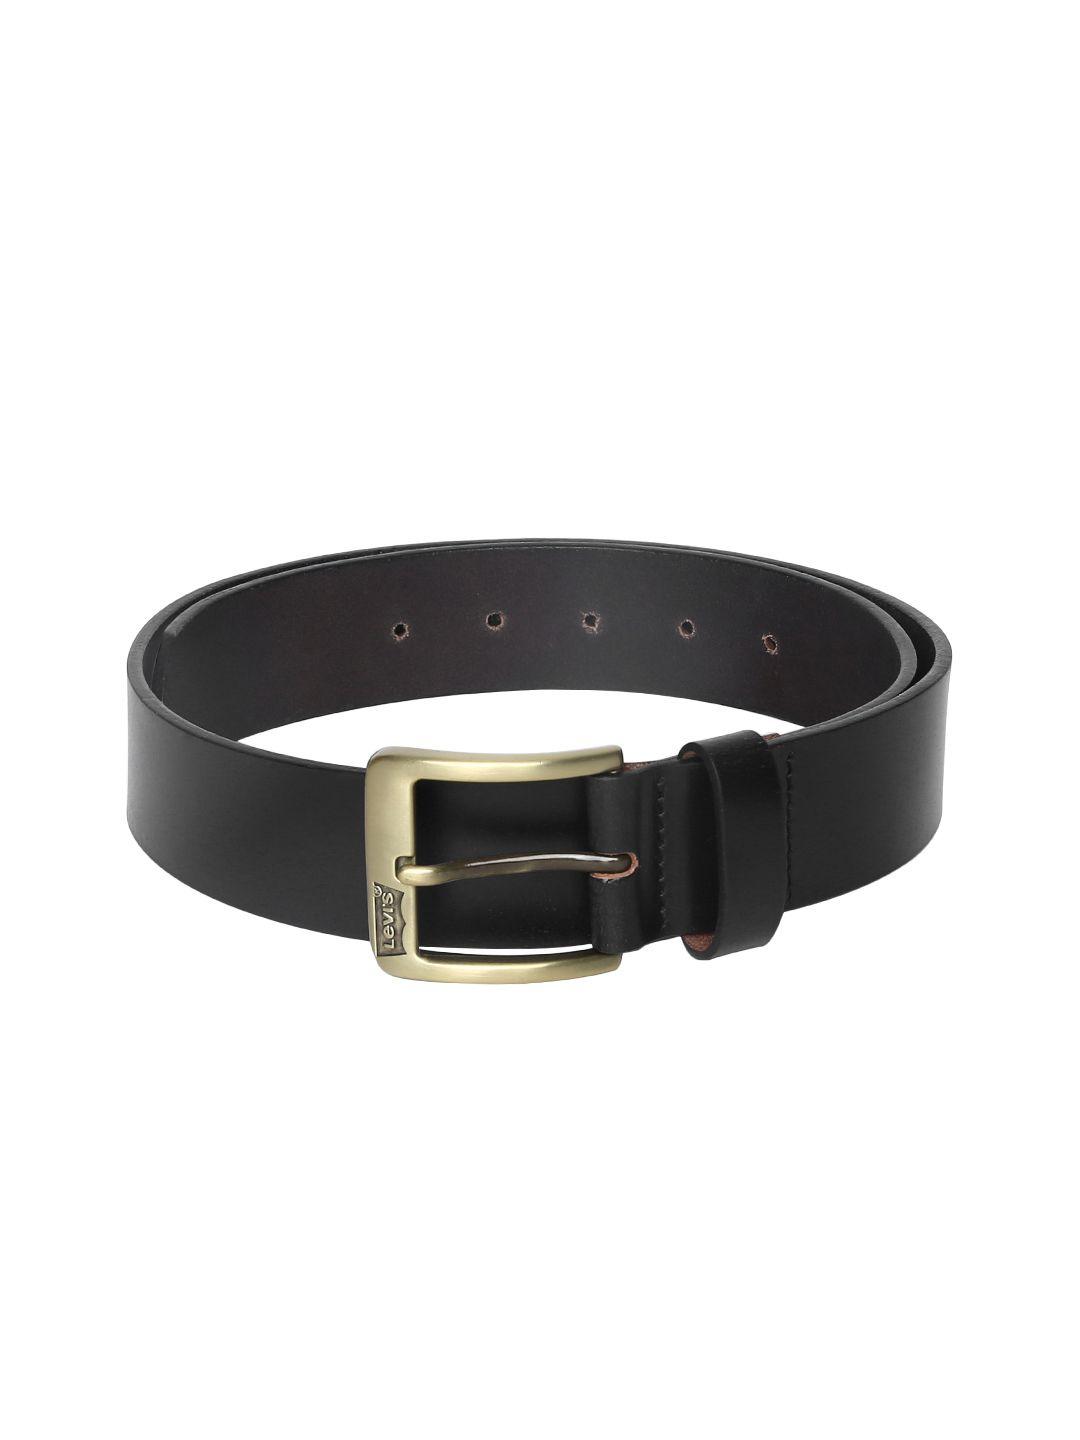 levis-men-black-solid-leather-belt